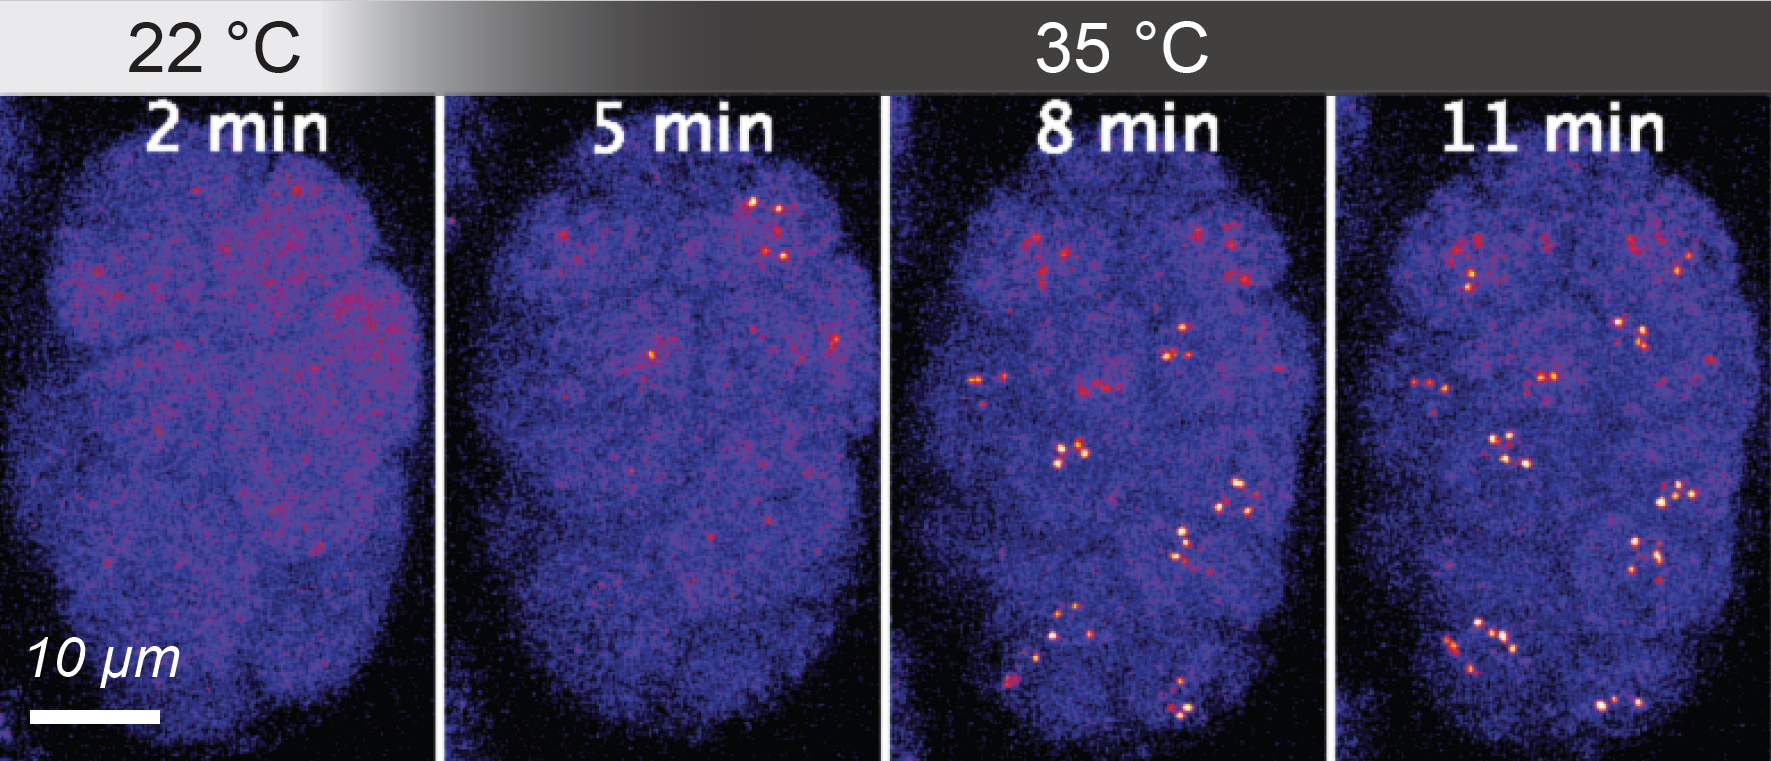 Kondensaty białkowe tworzone przez czynnik transkrypcyjny HSF-1 w jądrach komórek wczesnego embrionu C. elegans pod wpływem stresu termicznego, fot. A. Kłosin